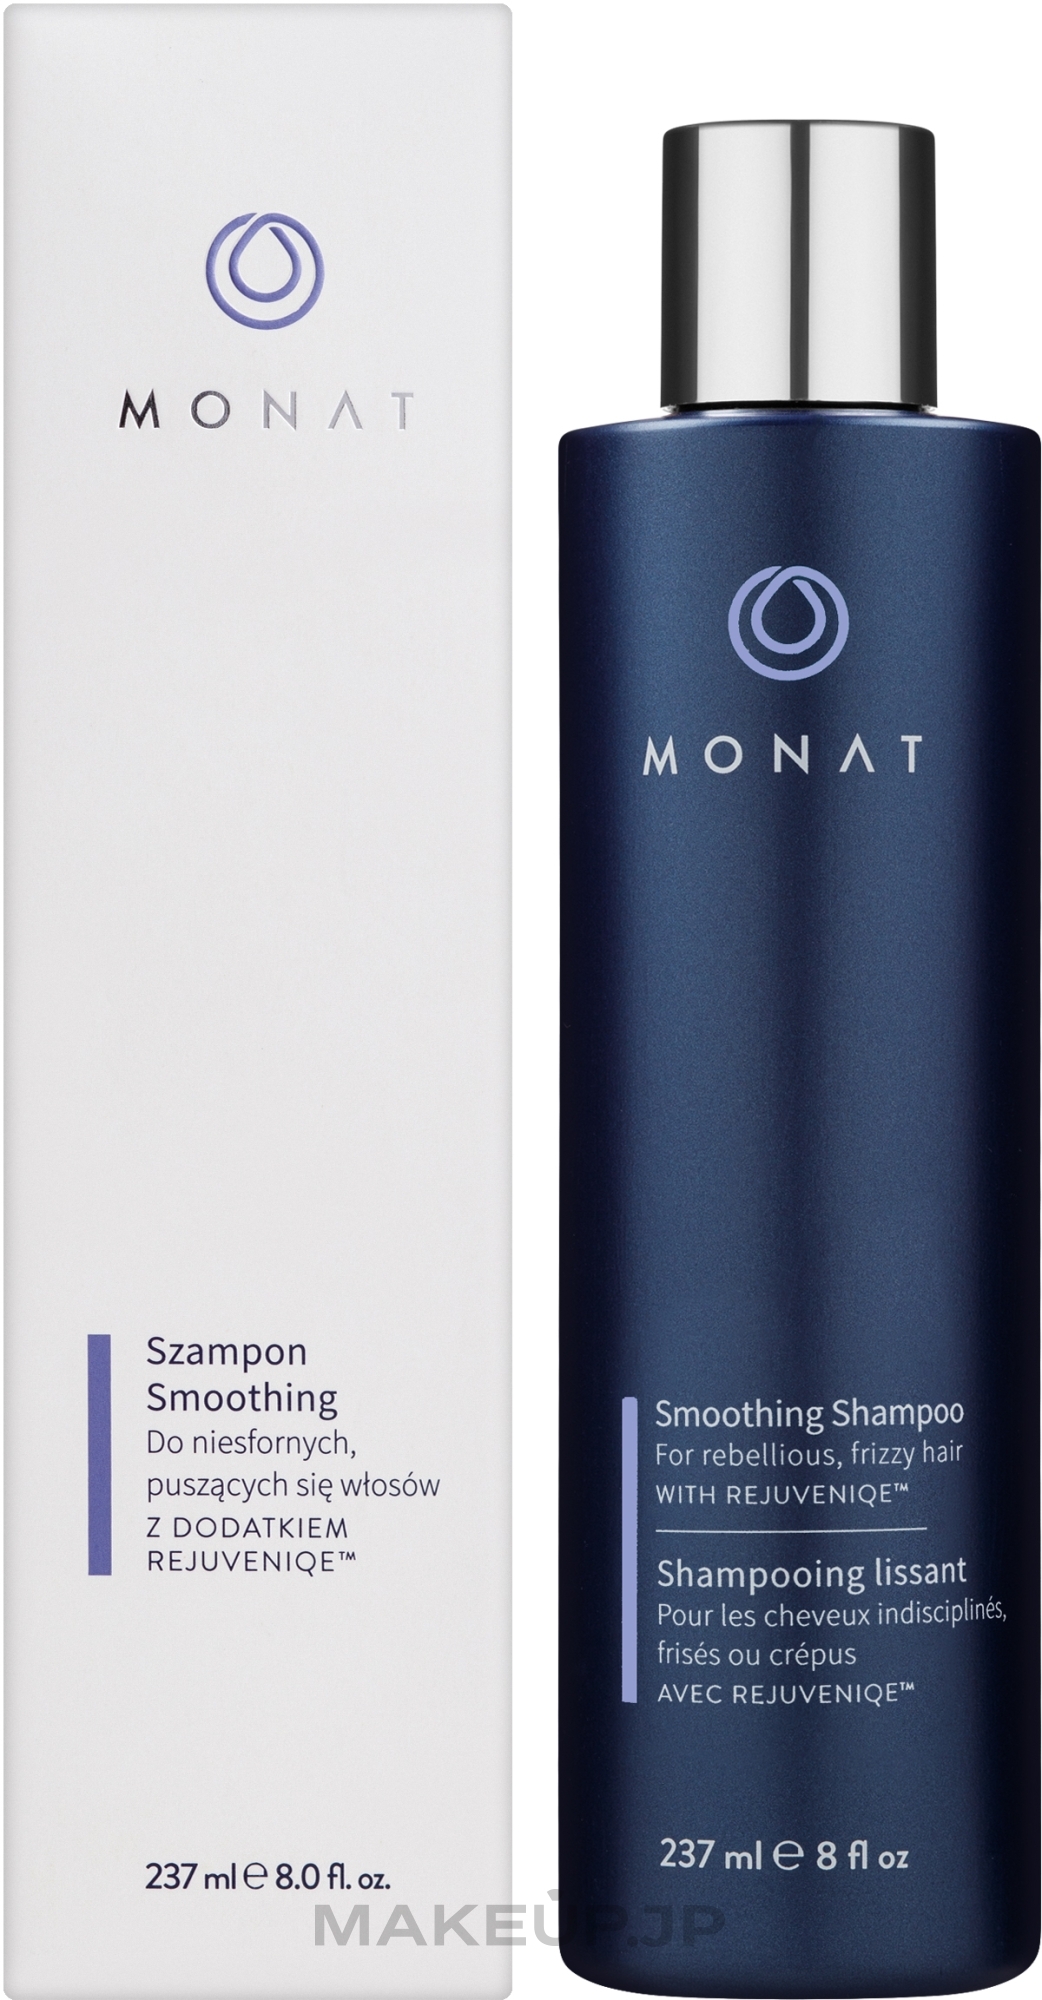 Smoothing Shampoo - Monat Smoothing Shampoo — photo 237 ml